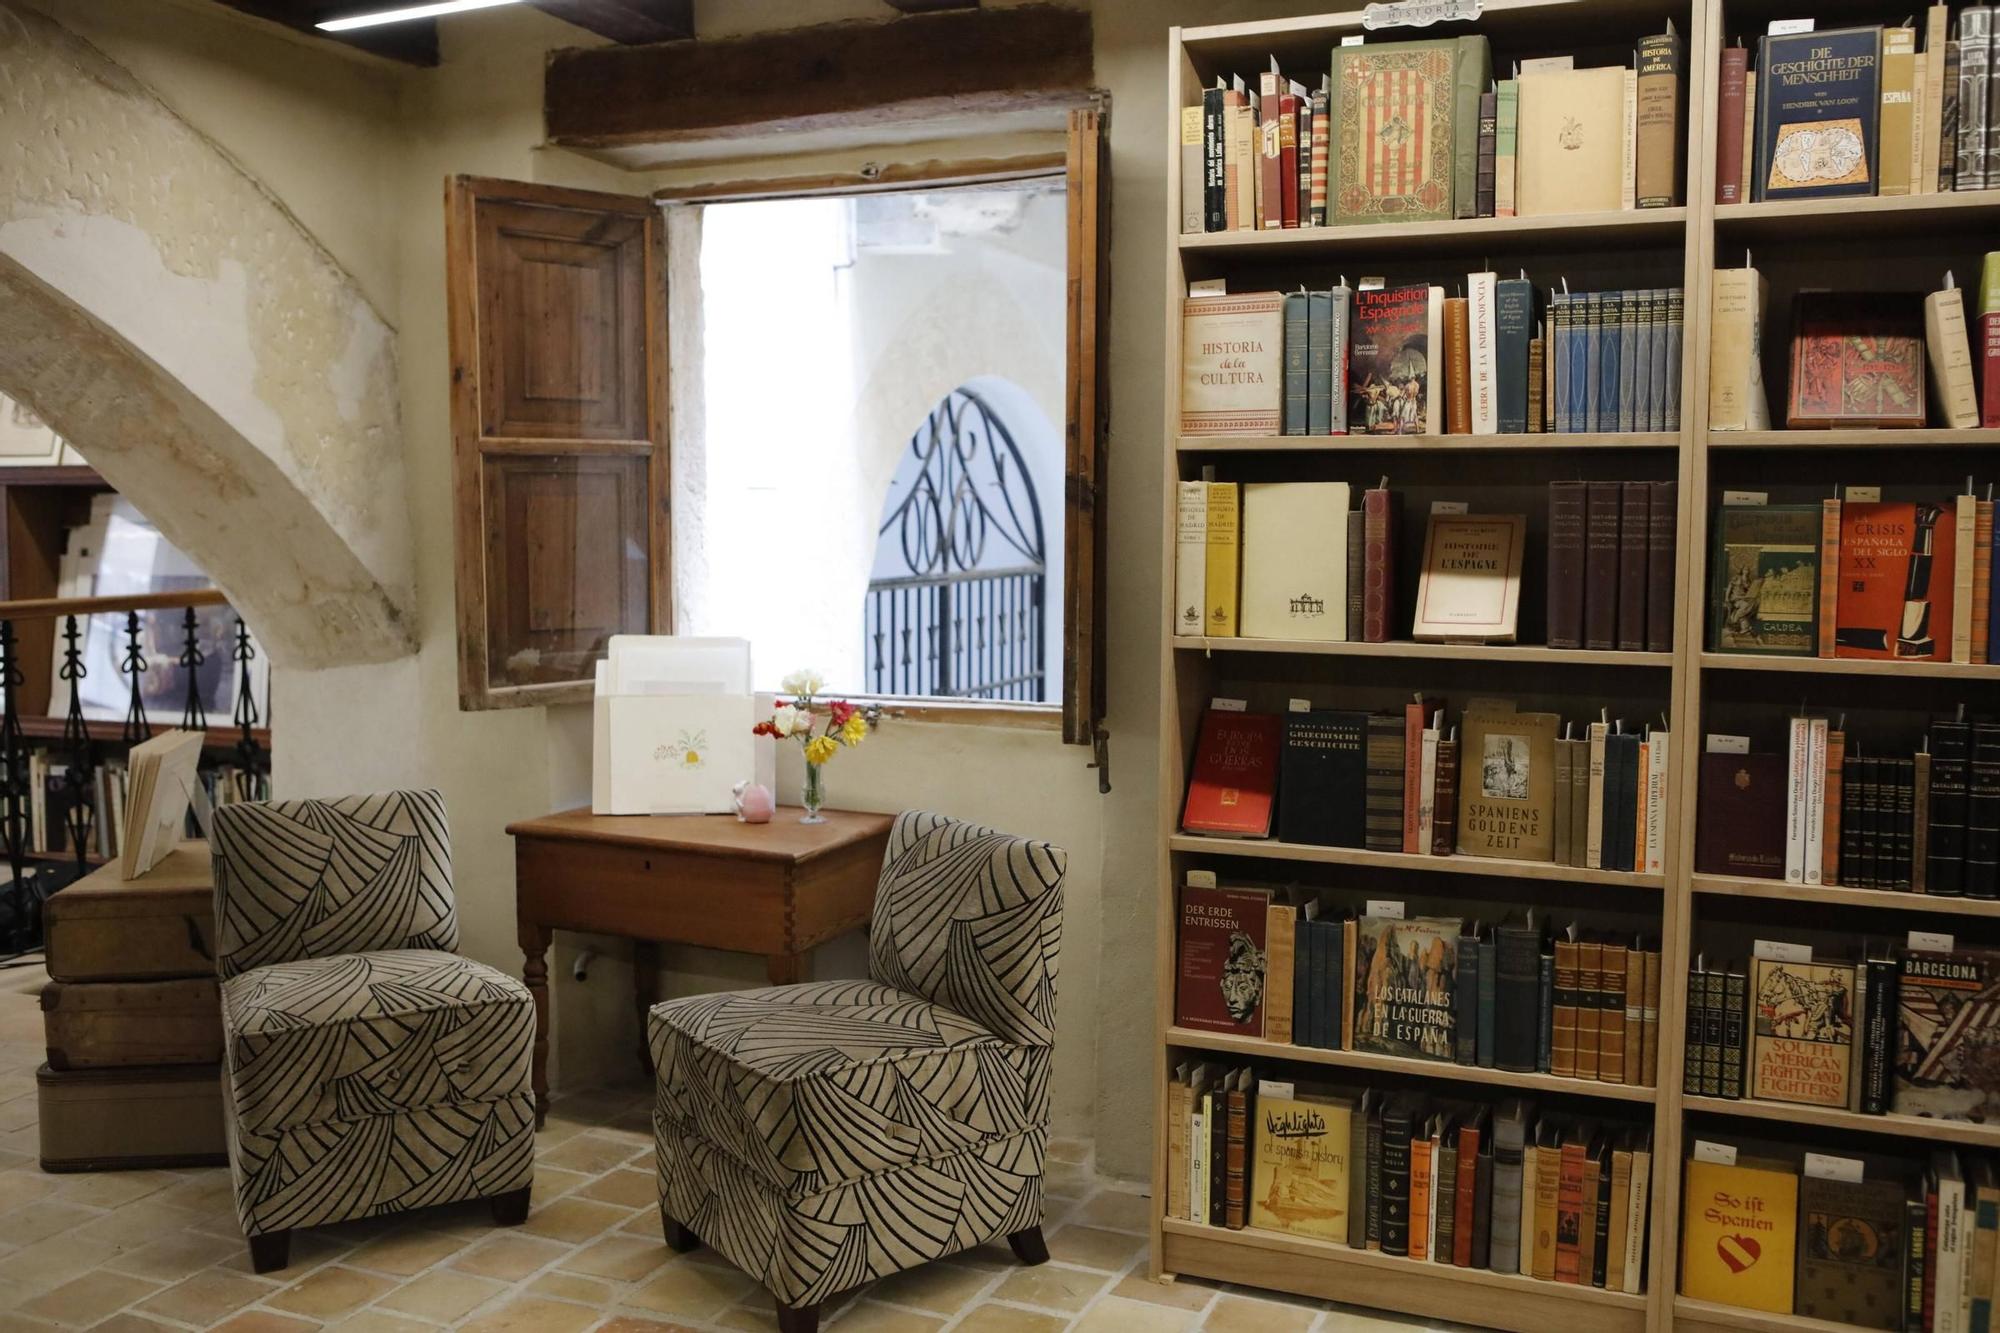 Der Raum im renovierten, historischen Gebäude beherbergt neben gut sortierten Bücherregalen auch eine Leseecke.